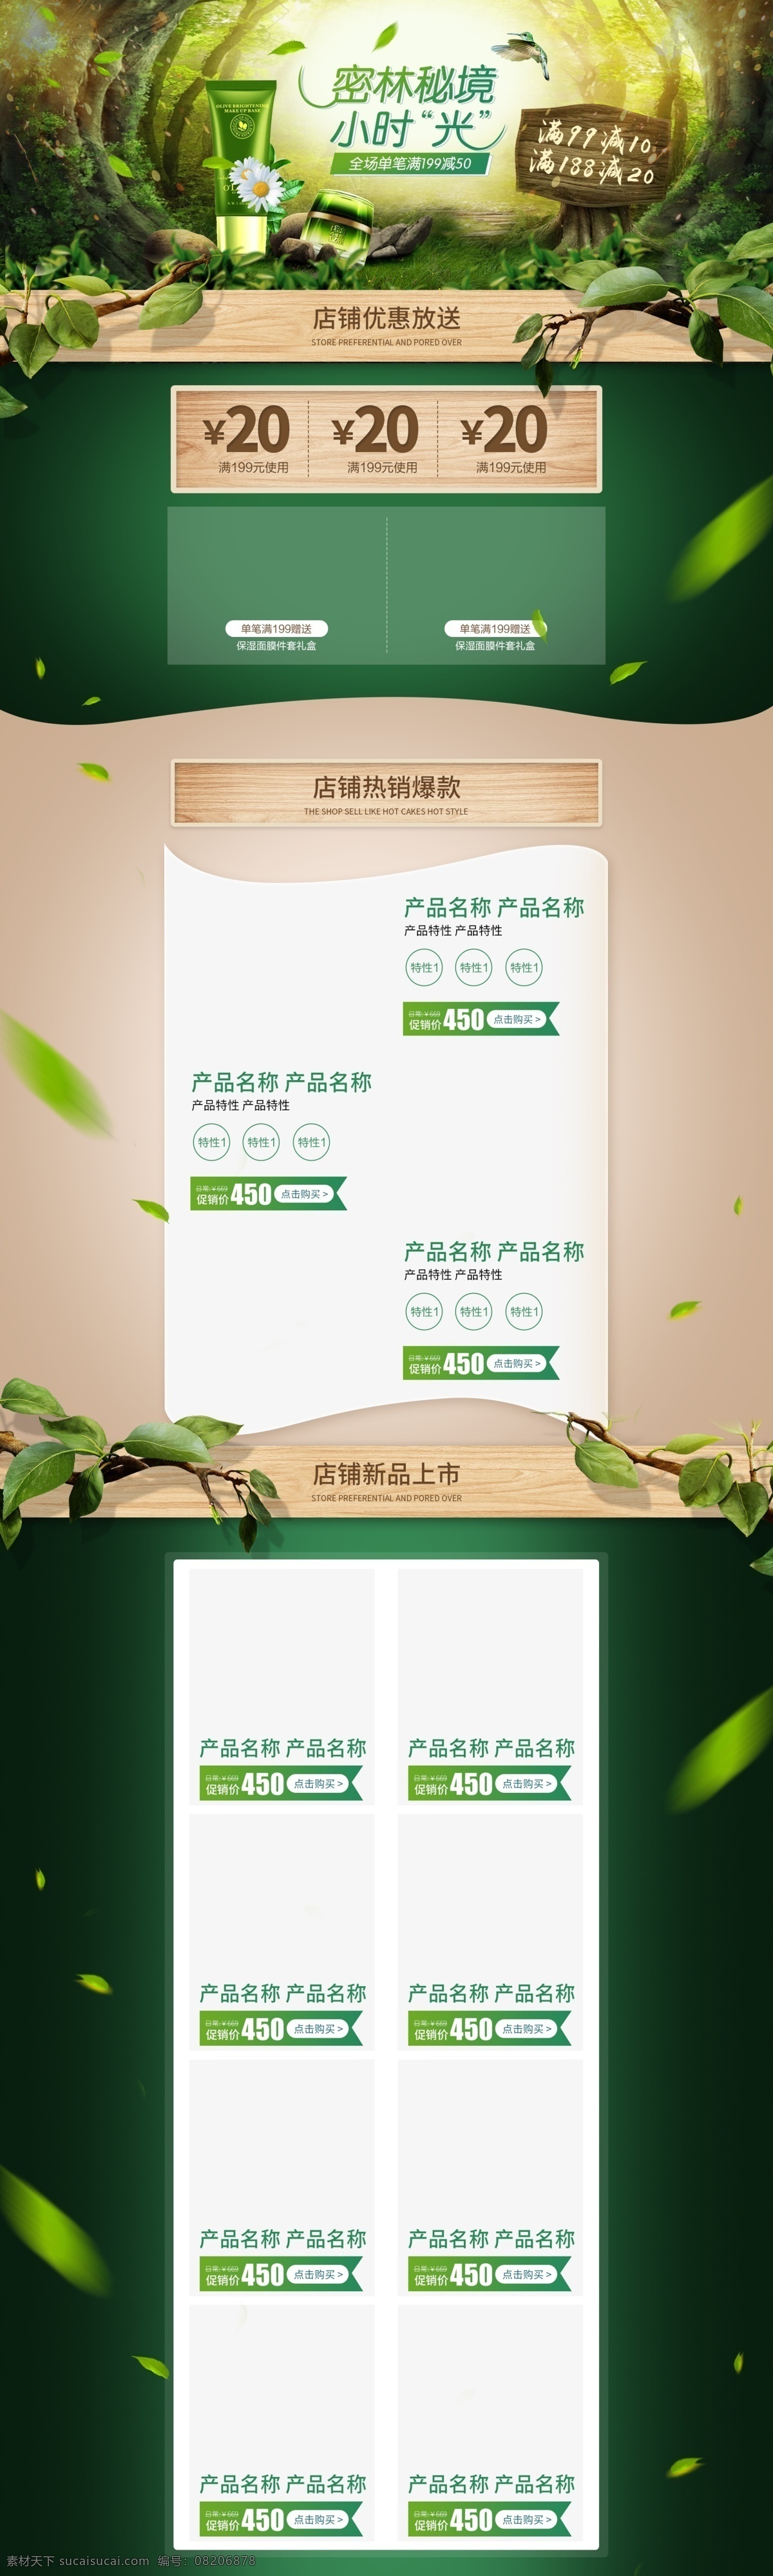 电商 淘宝 化妆品 促销 绿色植物 木板 自然 首页 绿色 绿叶 植物 美妆 喜鹊 石头